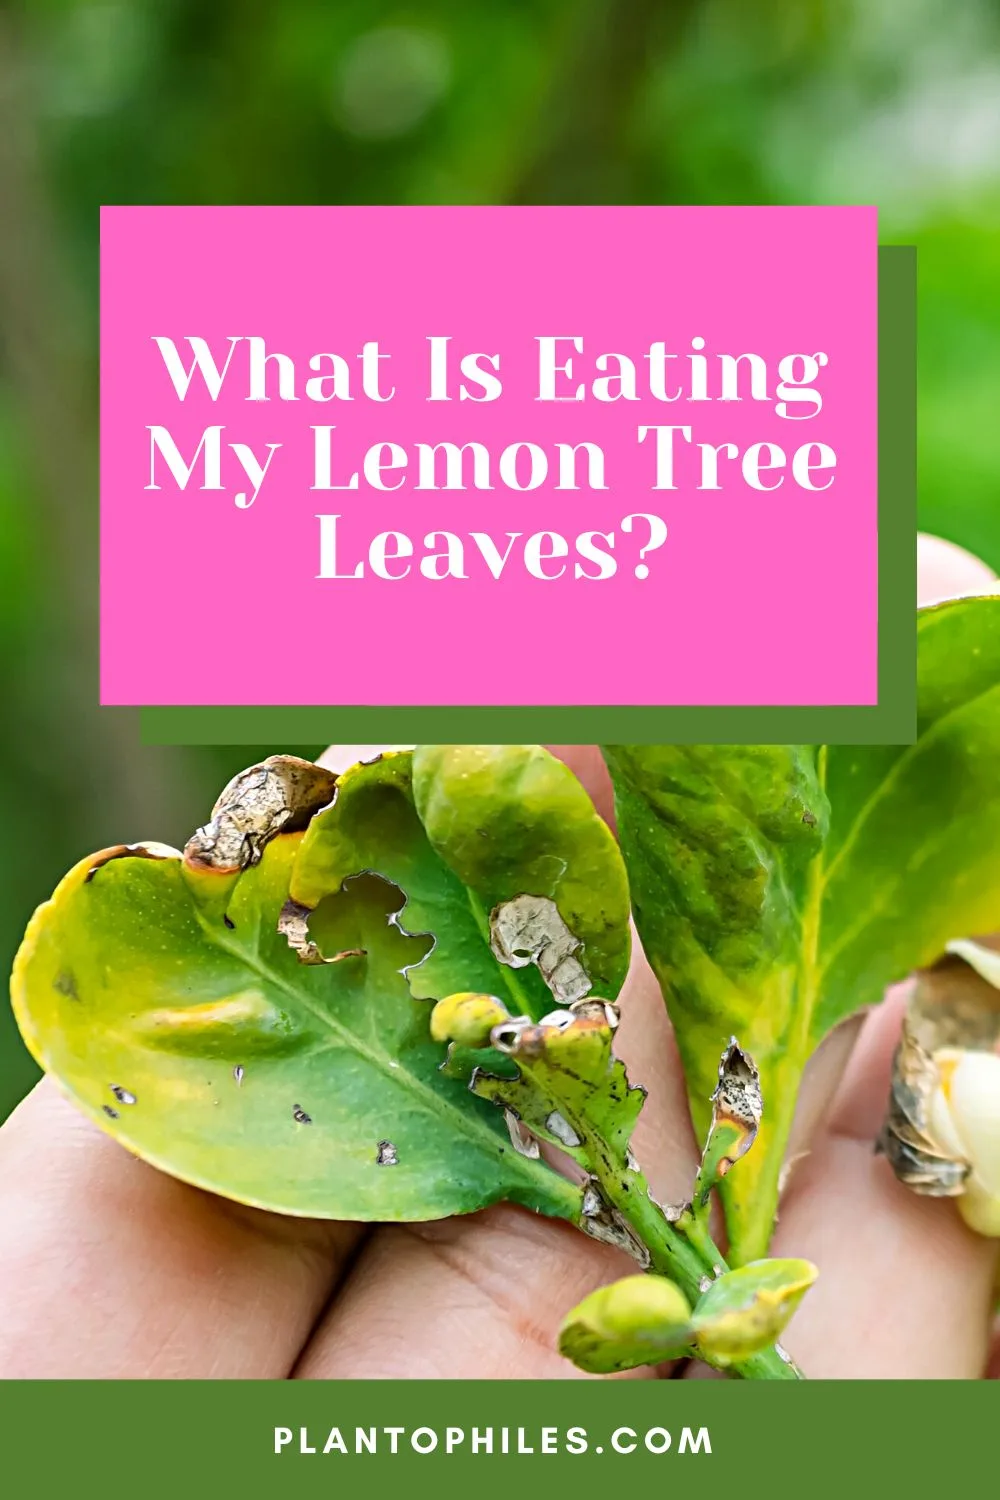 What is Eating My Lemon Tree Leaves?